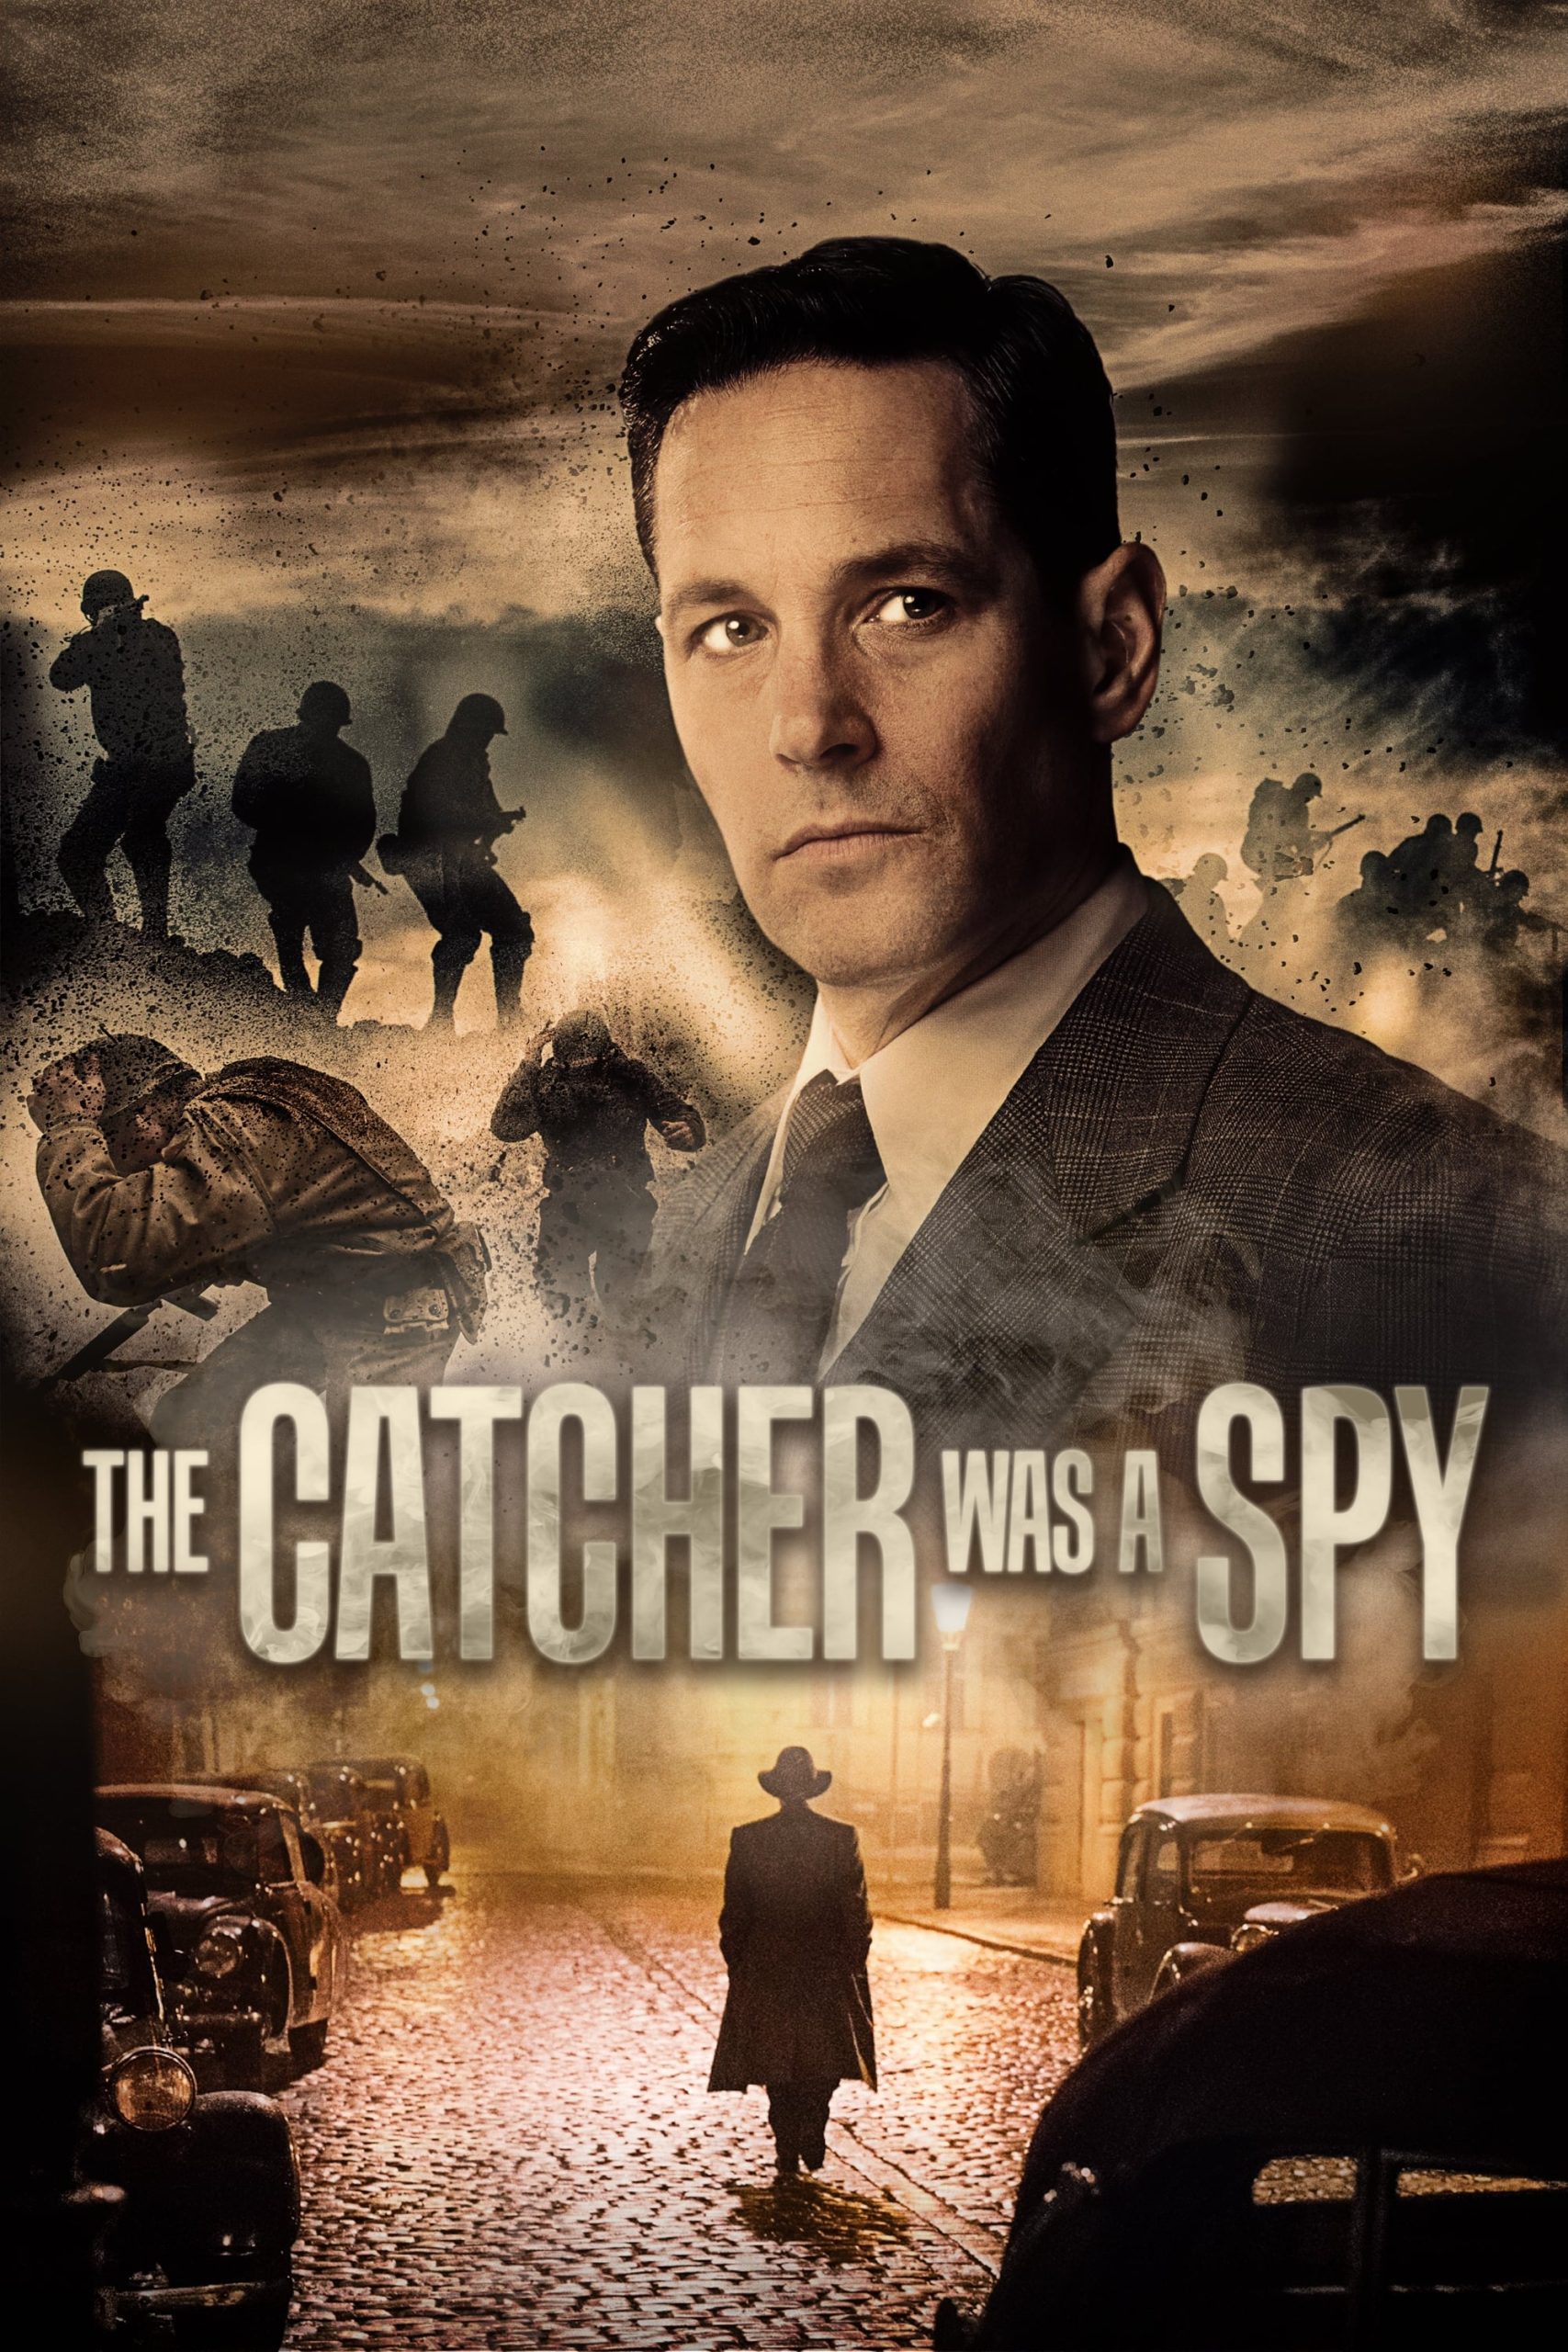 ดูหนังออนไลน์ฟรี The Catcher Was a Spy ใครเป็นสายลับ